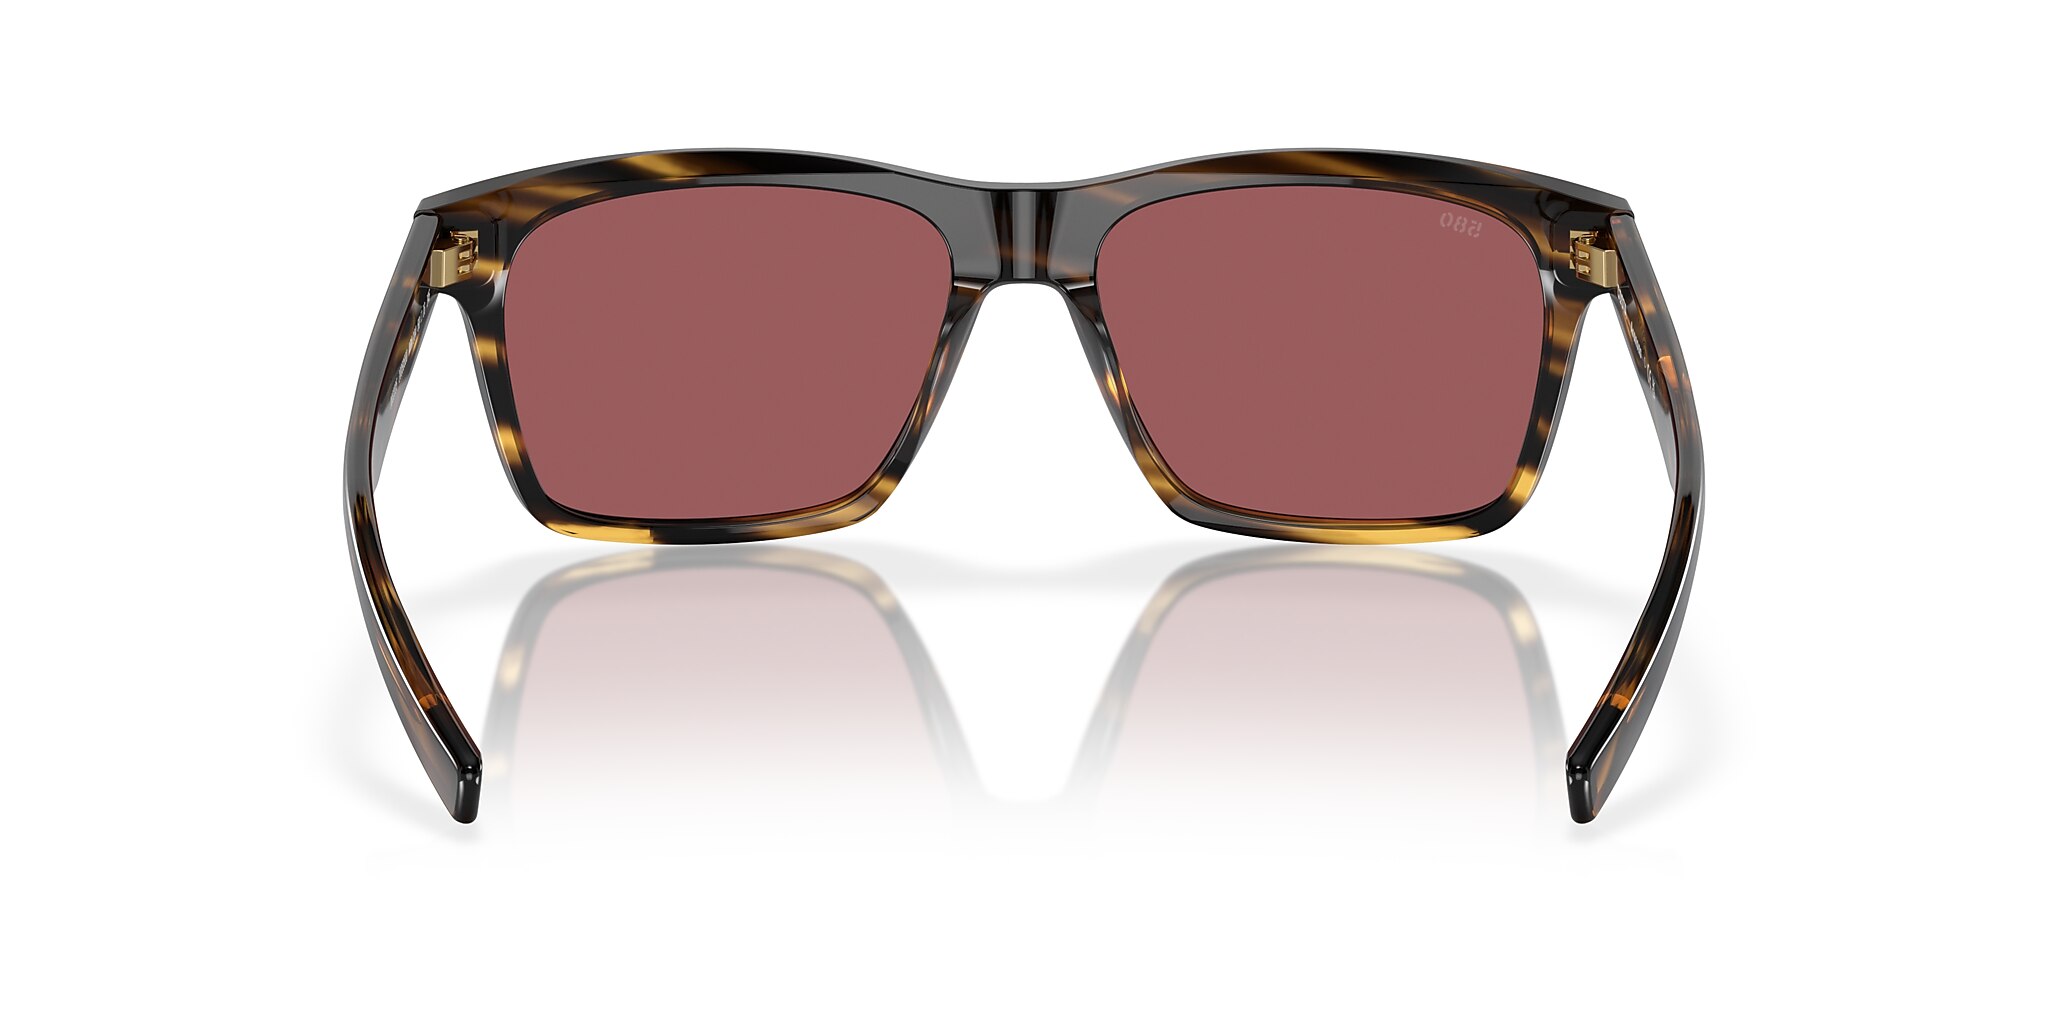 Aransas Polarized Sunglasses in Gold Mirror | Costa Del Mar®